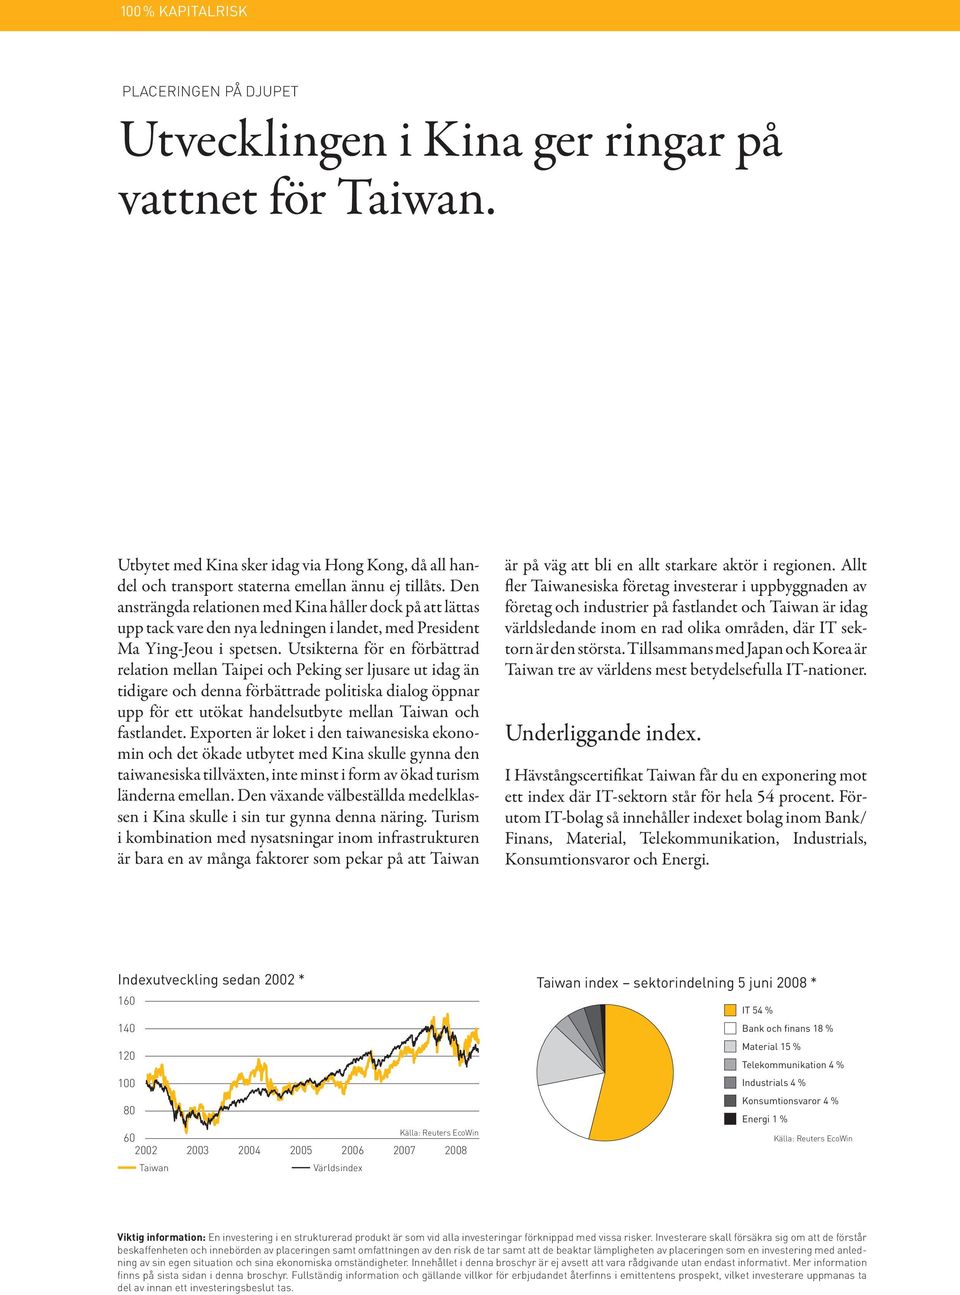 Utsikterna för en förbättrad relation mellan Taipei och Peking ser ljusare ut idag än tidigare och denna förbättrade politiska dialog öppnar upp för ett utökat handelsutbyte mellan Taiwan och